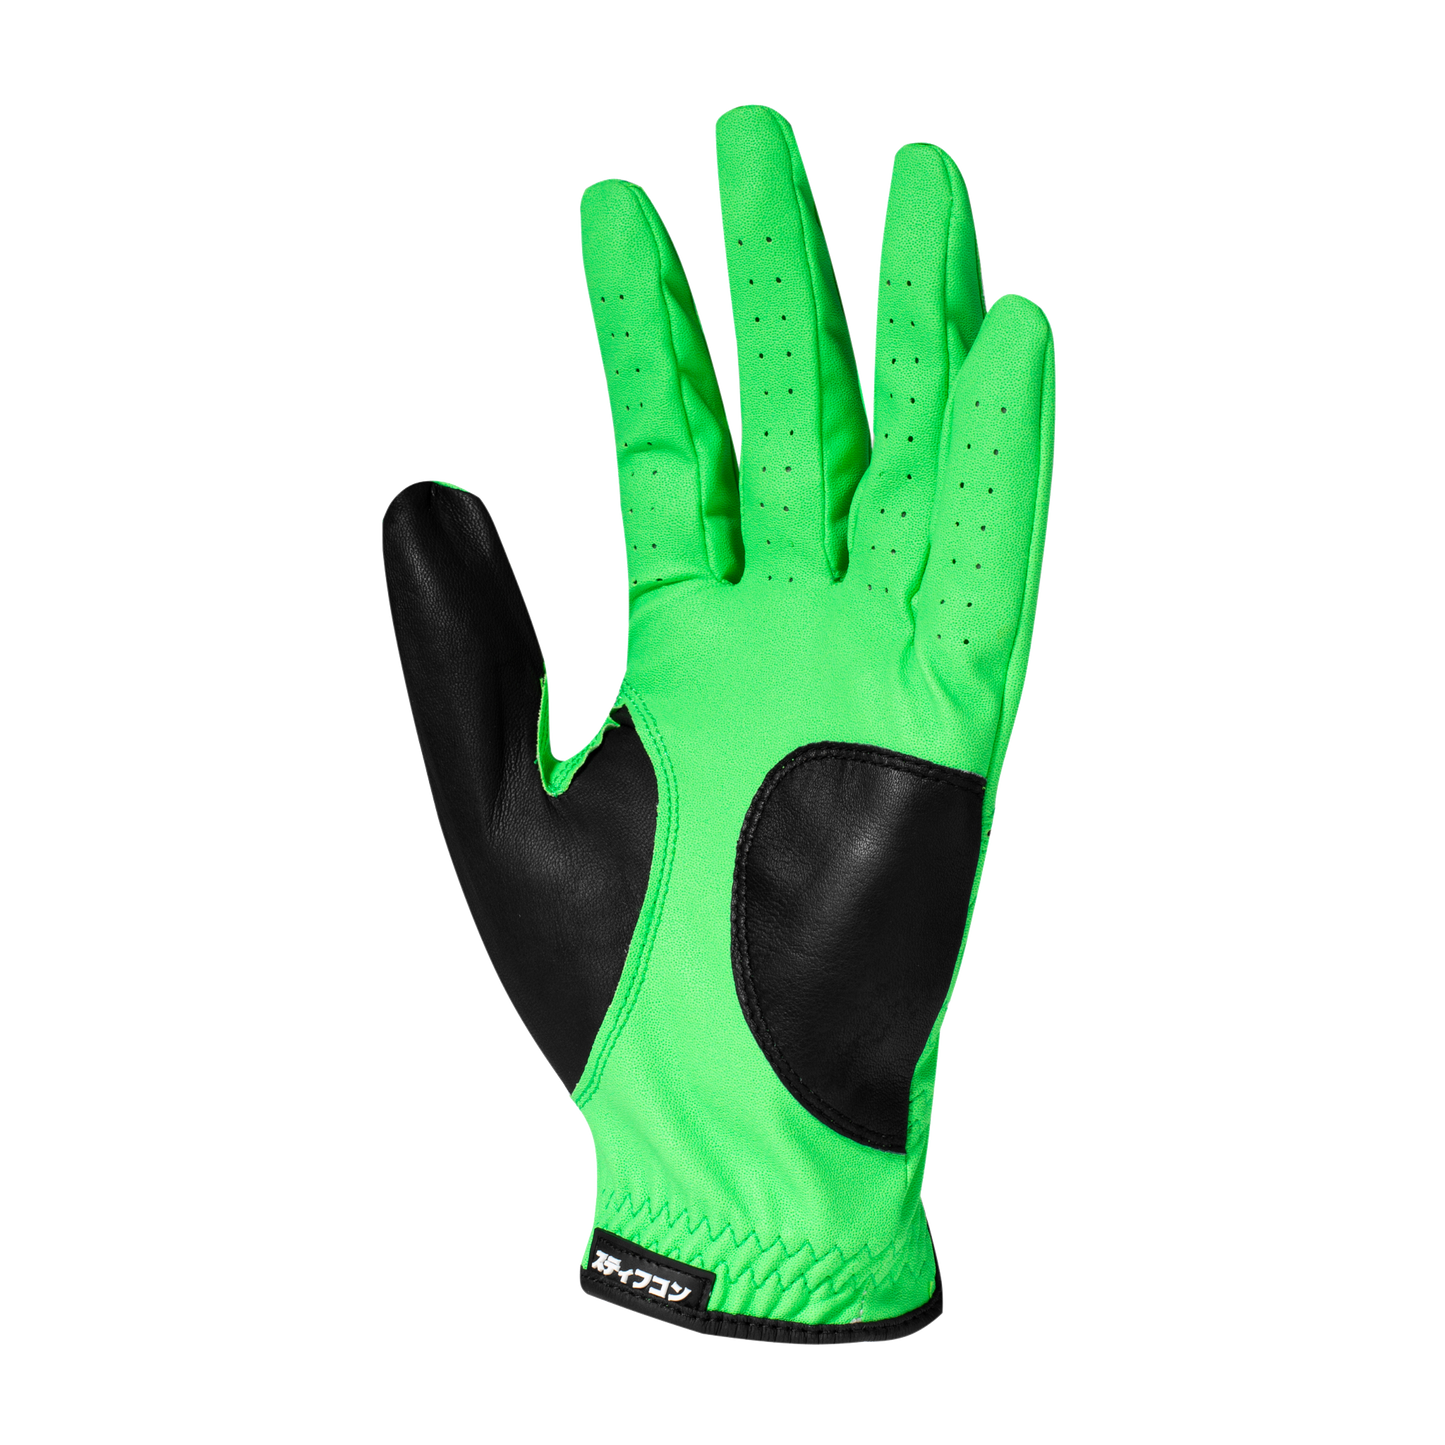 FLUO LIMEG Men's Golf Gloves FLUO_Lime Green